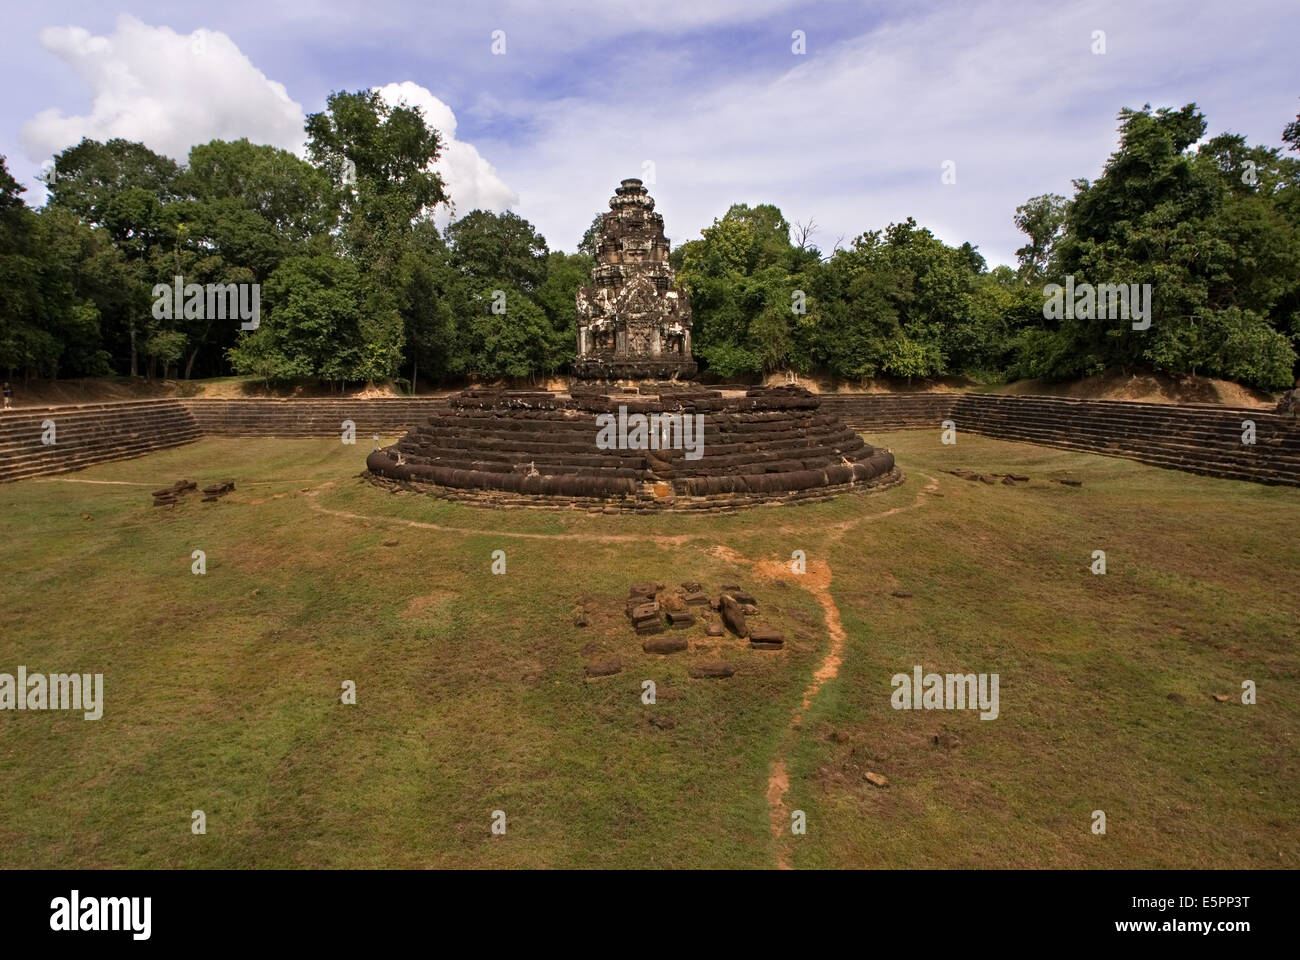 Neak Pean (die verschlungenen Schlangen) in Angkor, entsteht eine künstliche Insel mit einem buddhistischen Tempel auf einer kreisrunden Insel im Preah Khan Baray während der Regierungszeit von König Jayavarman VII., Kambodscha, Asien Stockfoto